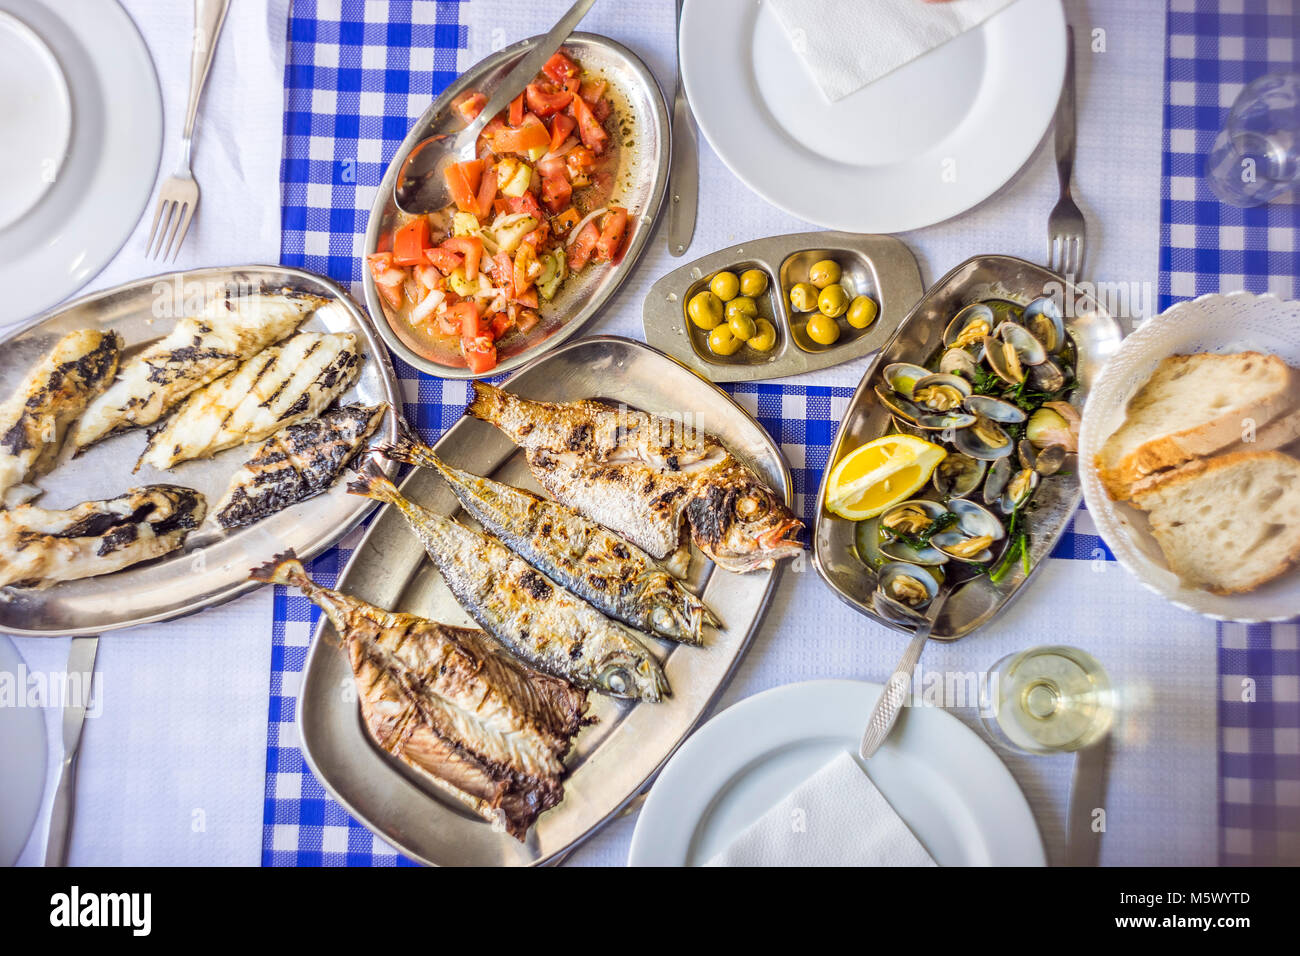 Fête du poisson : loup de mer, Golden, chinchard accompagné de salade de tomates, de palourdes, de pain et de vin blanc, Portugal Banque D'Images